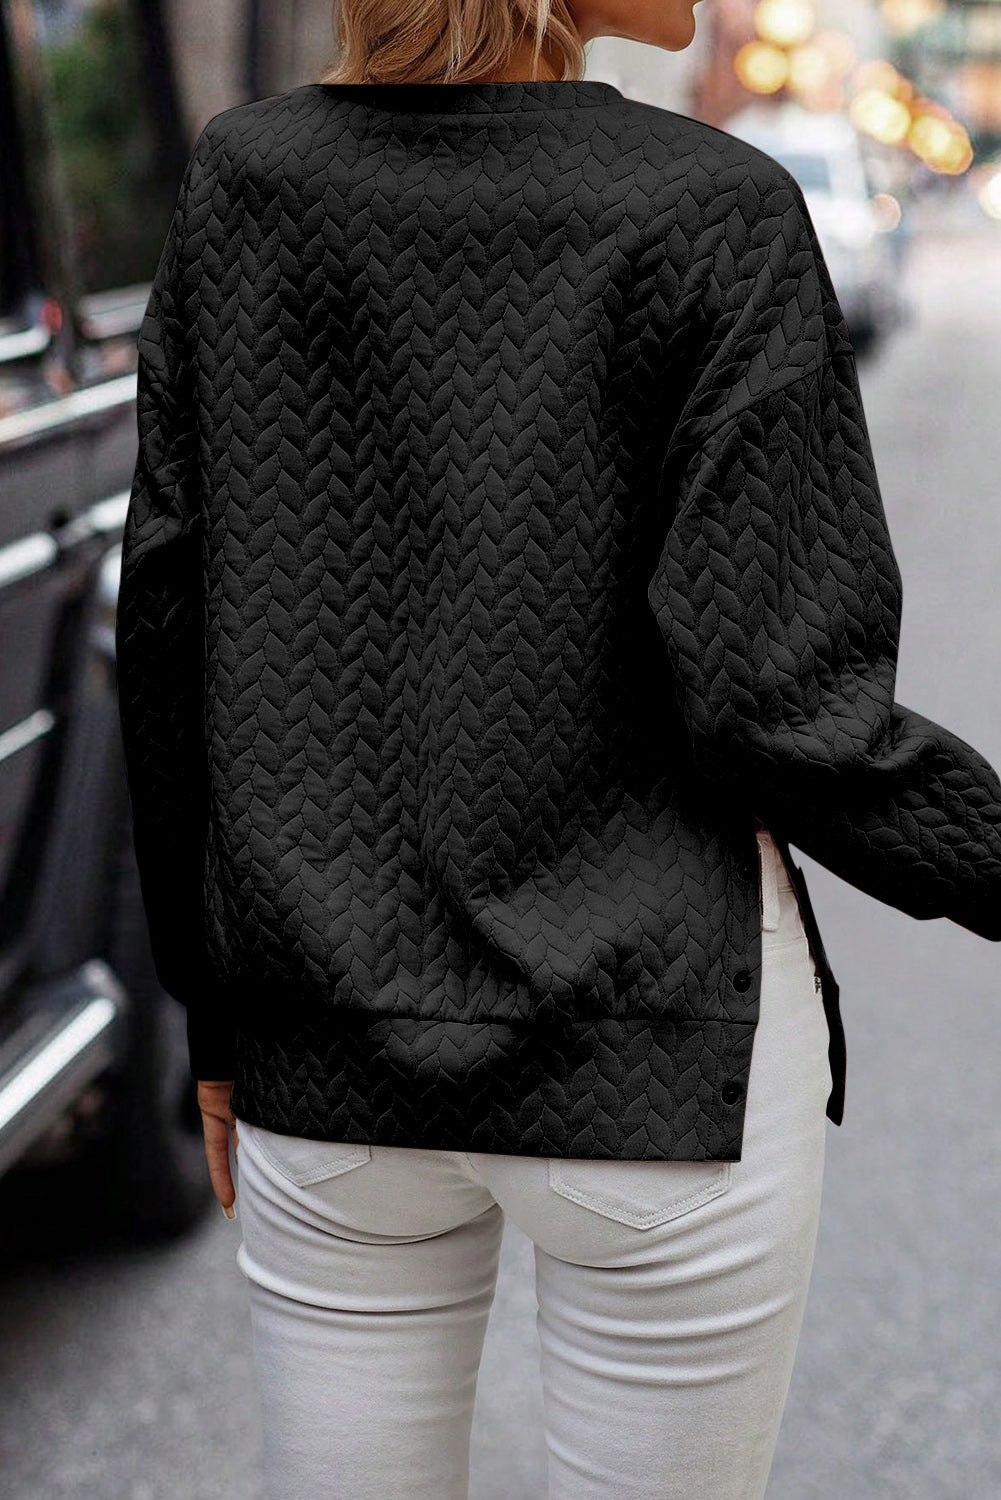 Sweat-shirt texturé noir châtain pâle avec boutons latéraux